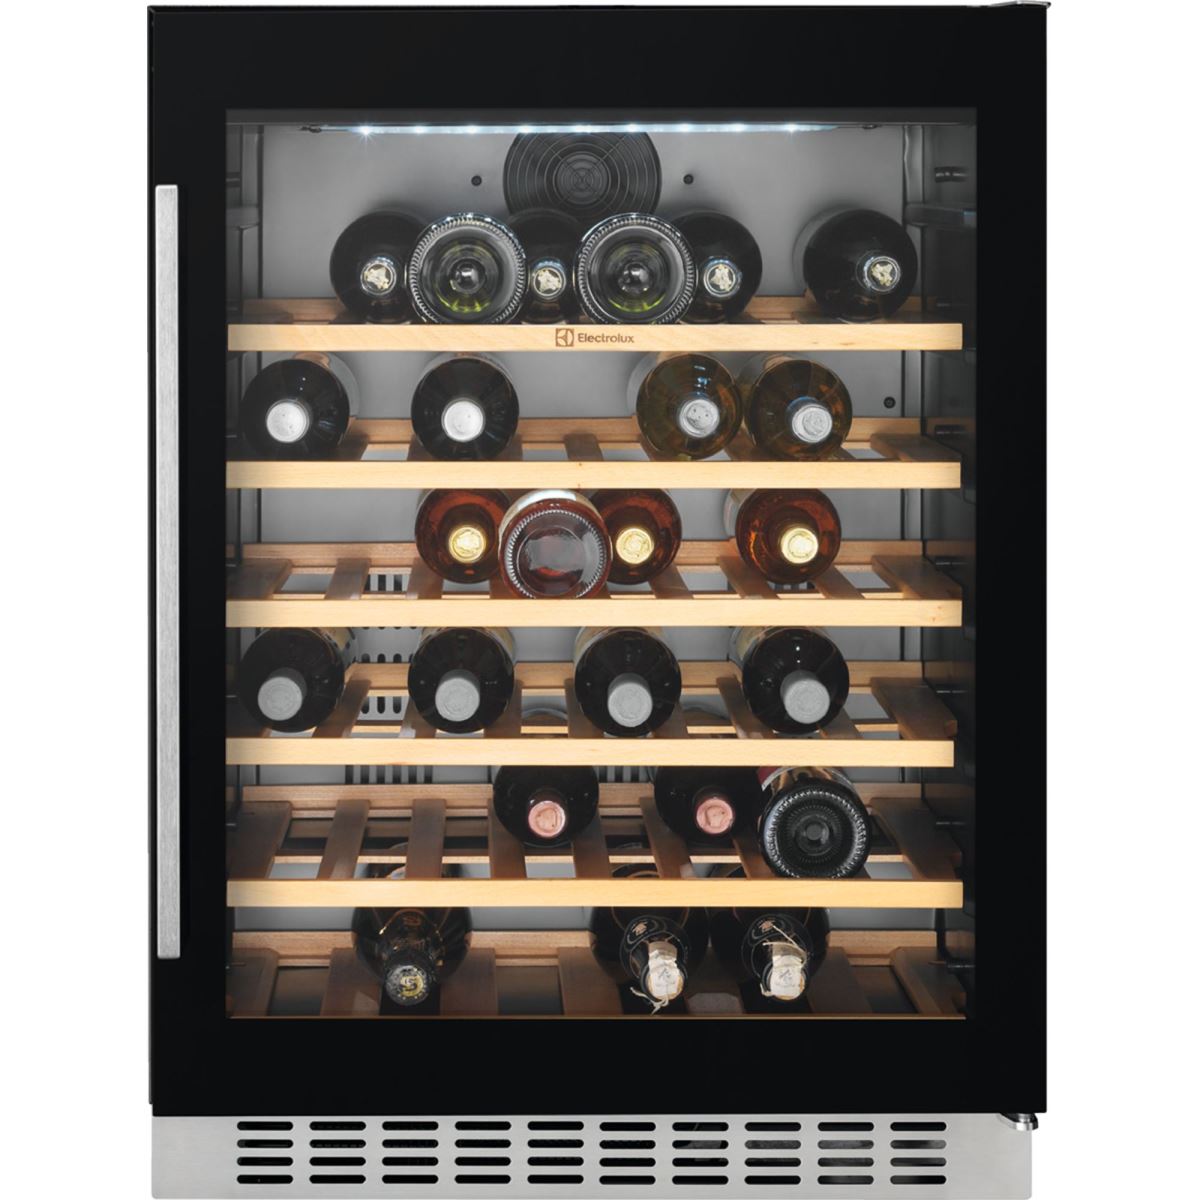 Racitor de vinuri incorporabil Electrolux ERW1573AOA, 138 litri, 46 sticle, Rafturi lemn, Control electronic, H 82 cm, l 59,5 cm, Culoare neagra (sticla)